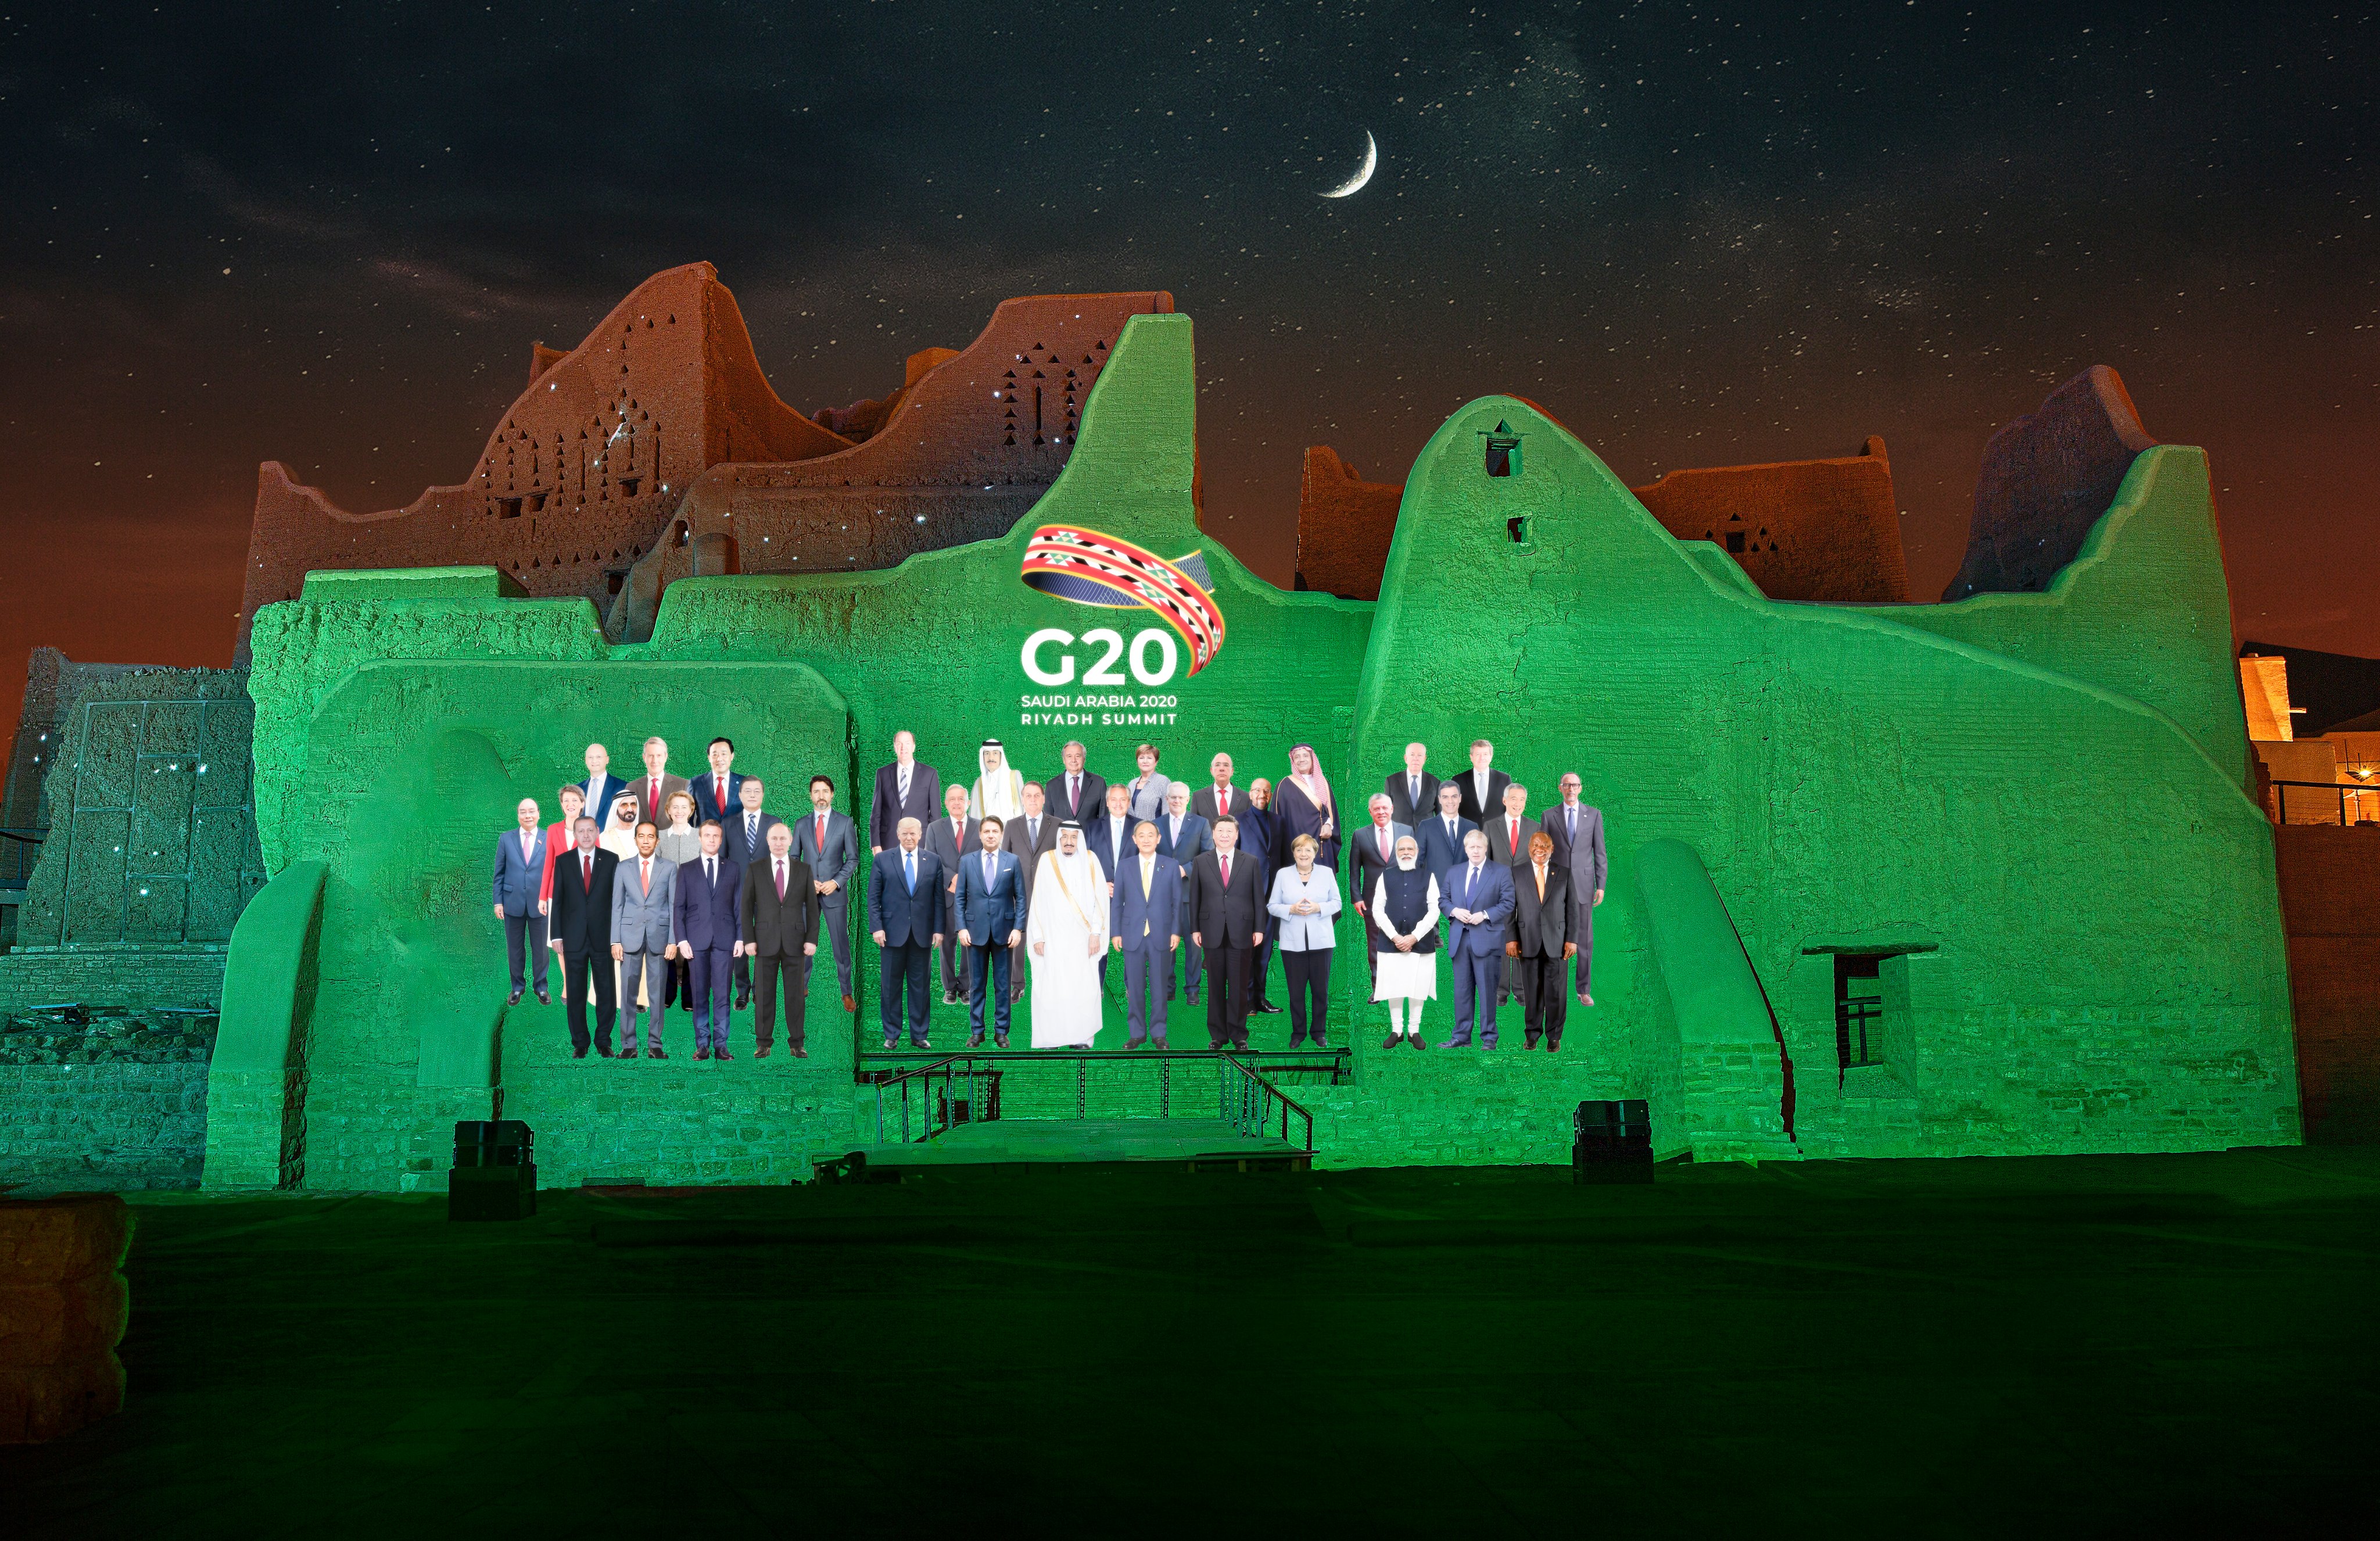 G20 leaders gather for virtual summit in Riyadh